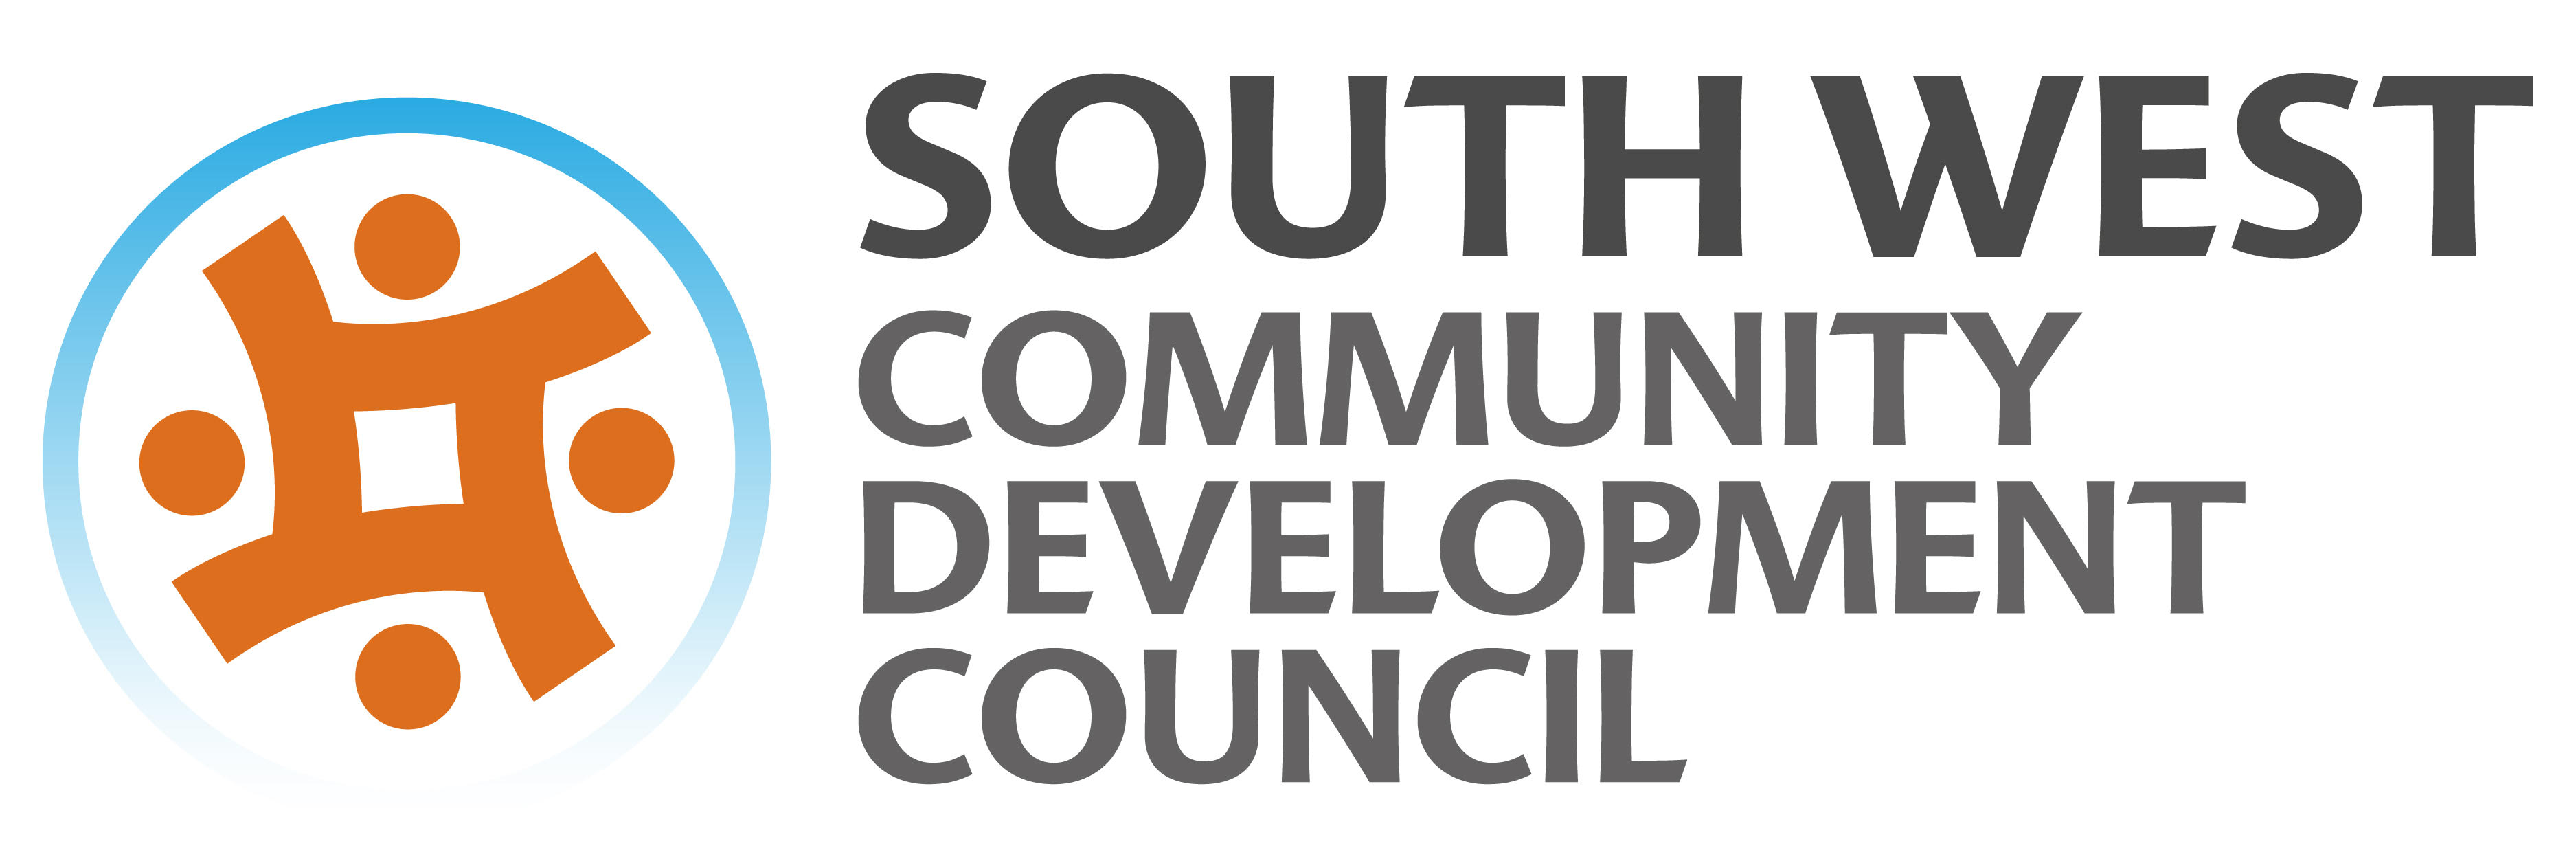 South West Community Development Council Logo